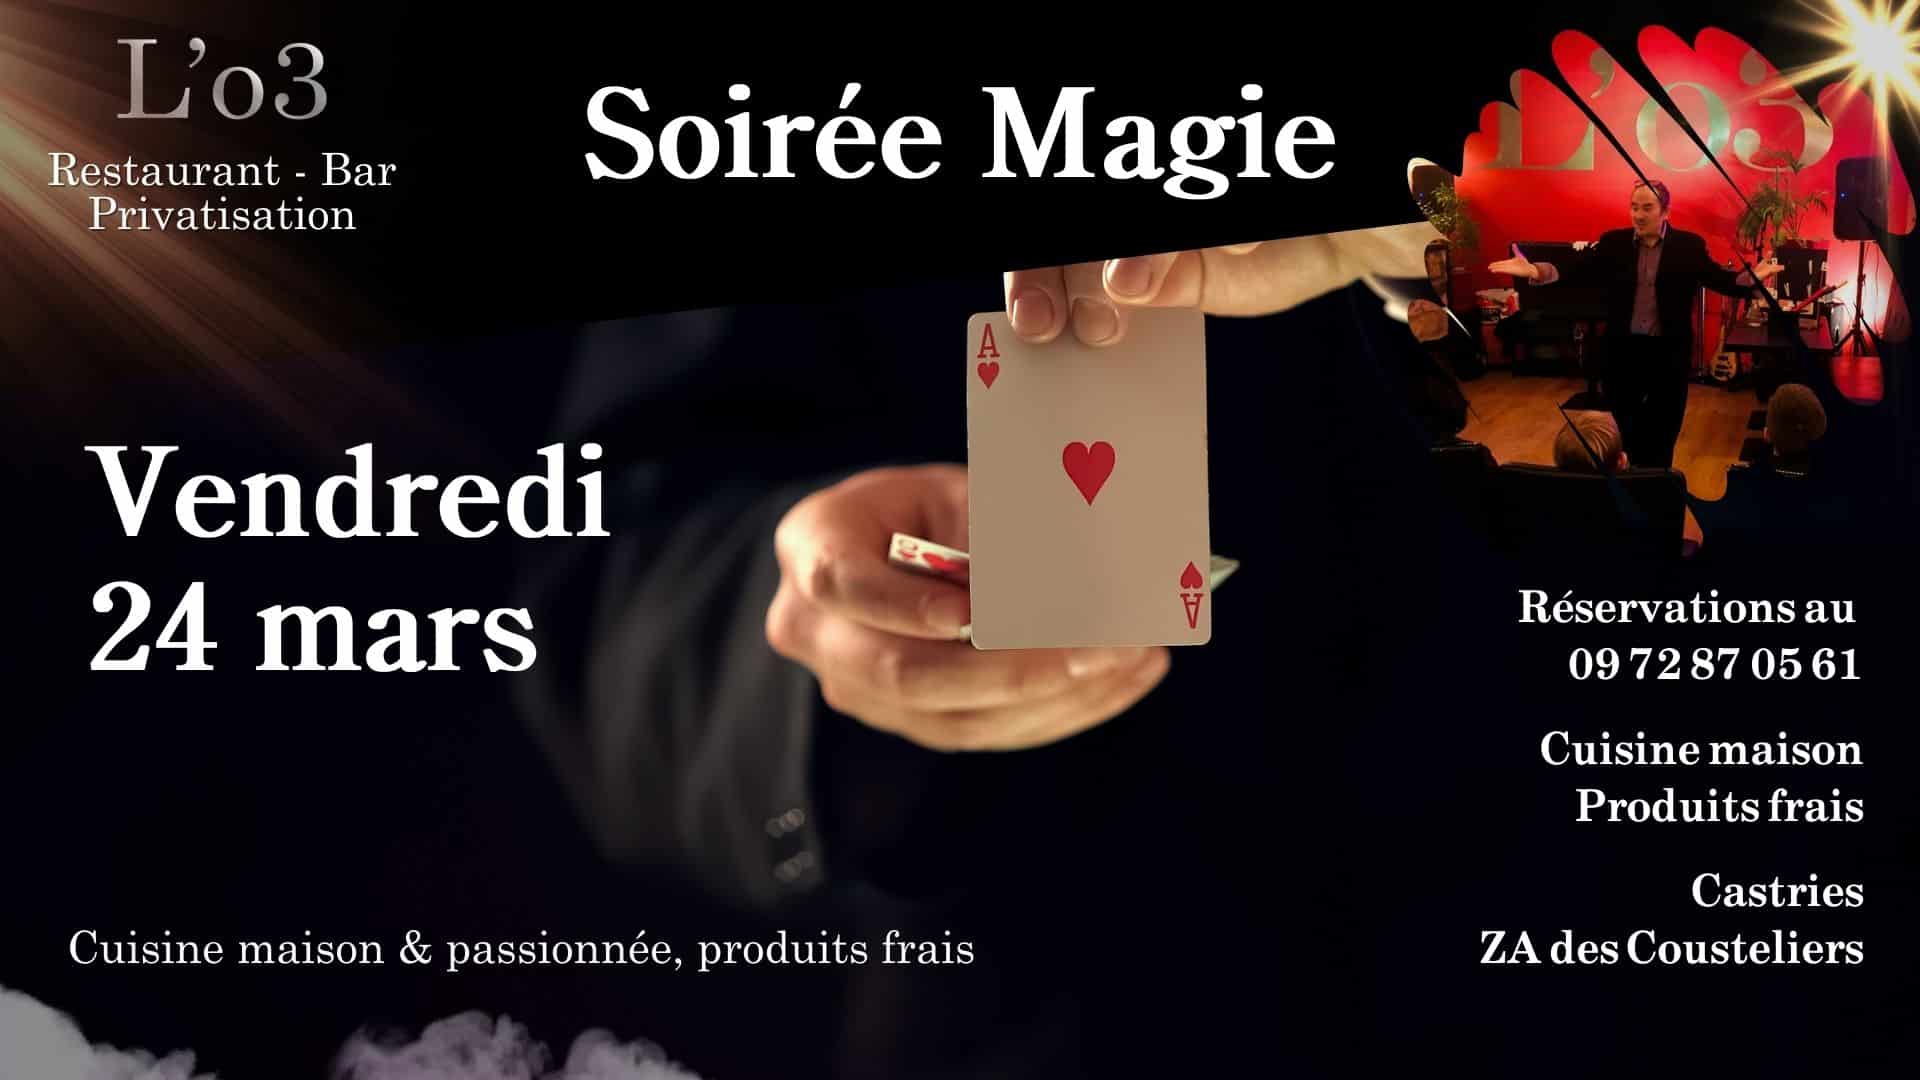 Soirée Magie à L’o3 – Castries ! – Vendredi 24 mars